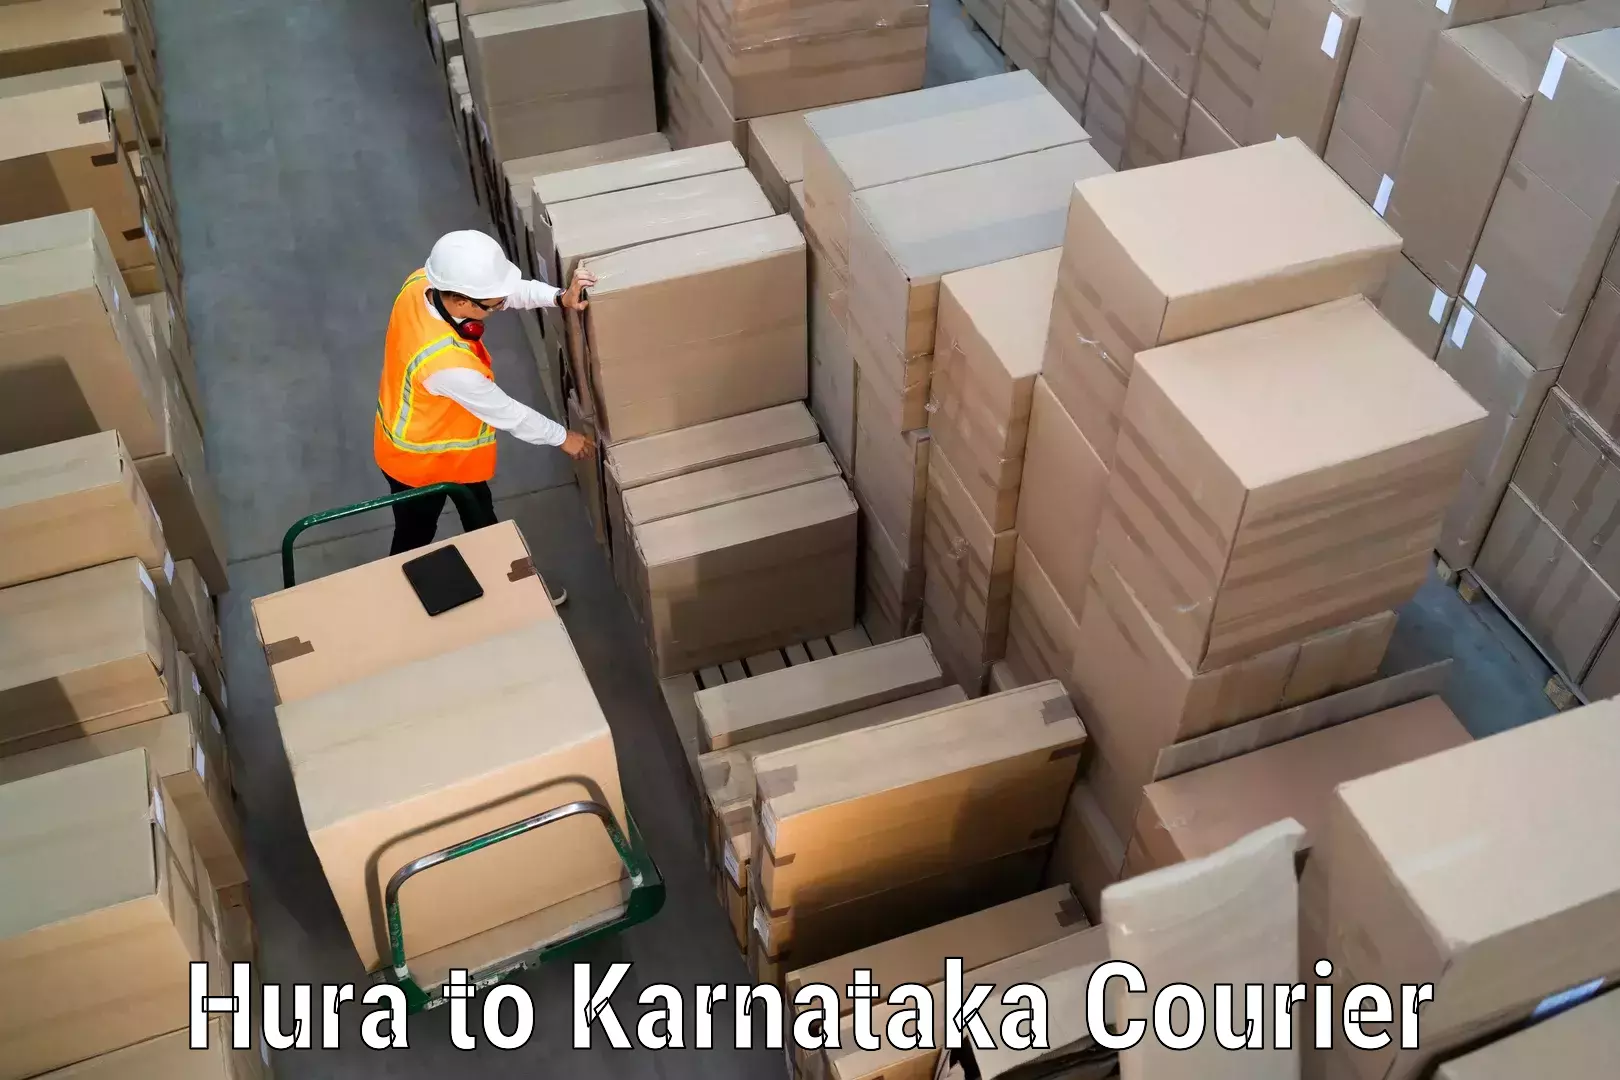 Express delivery capabilities Hura to Karnataka